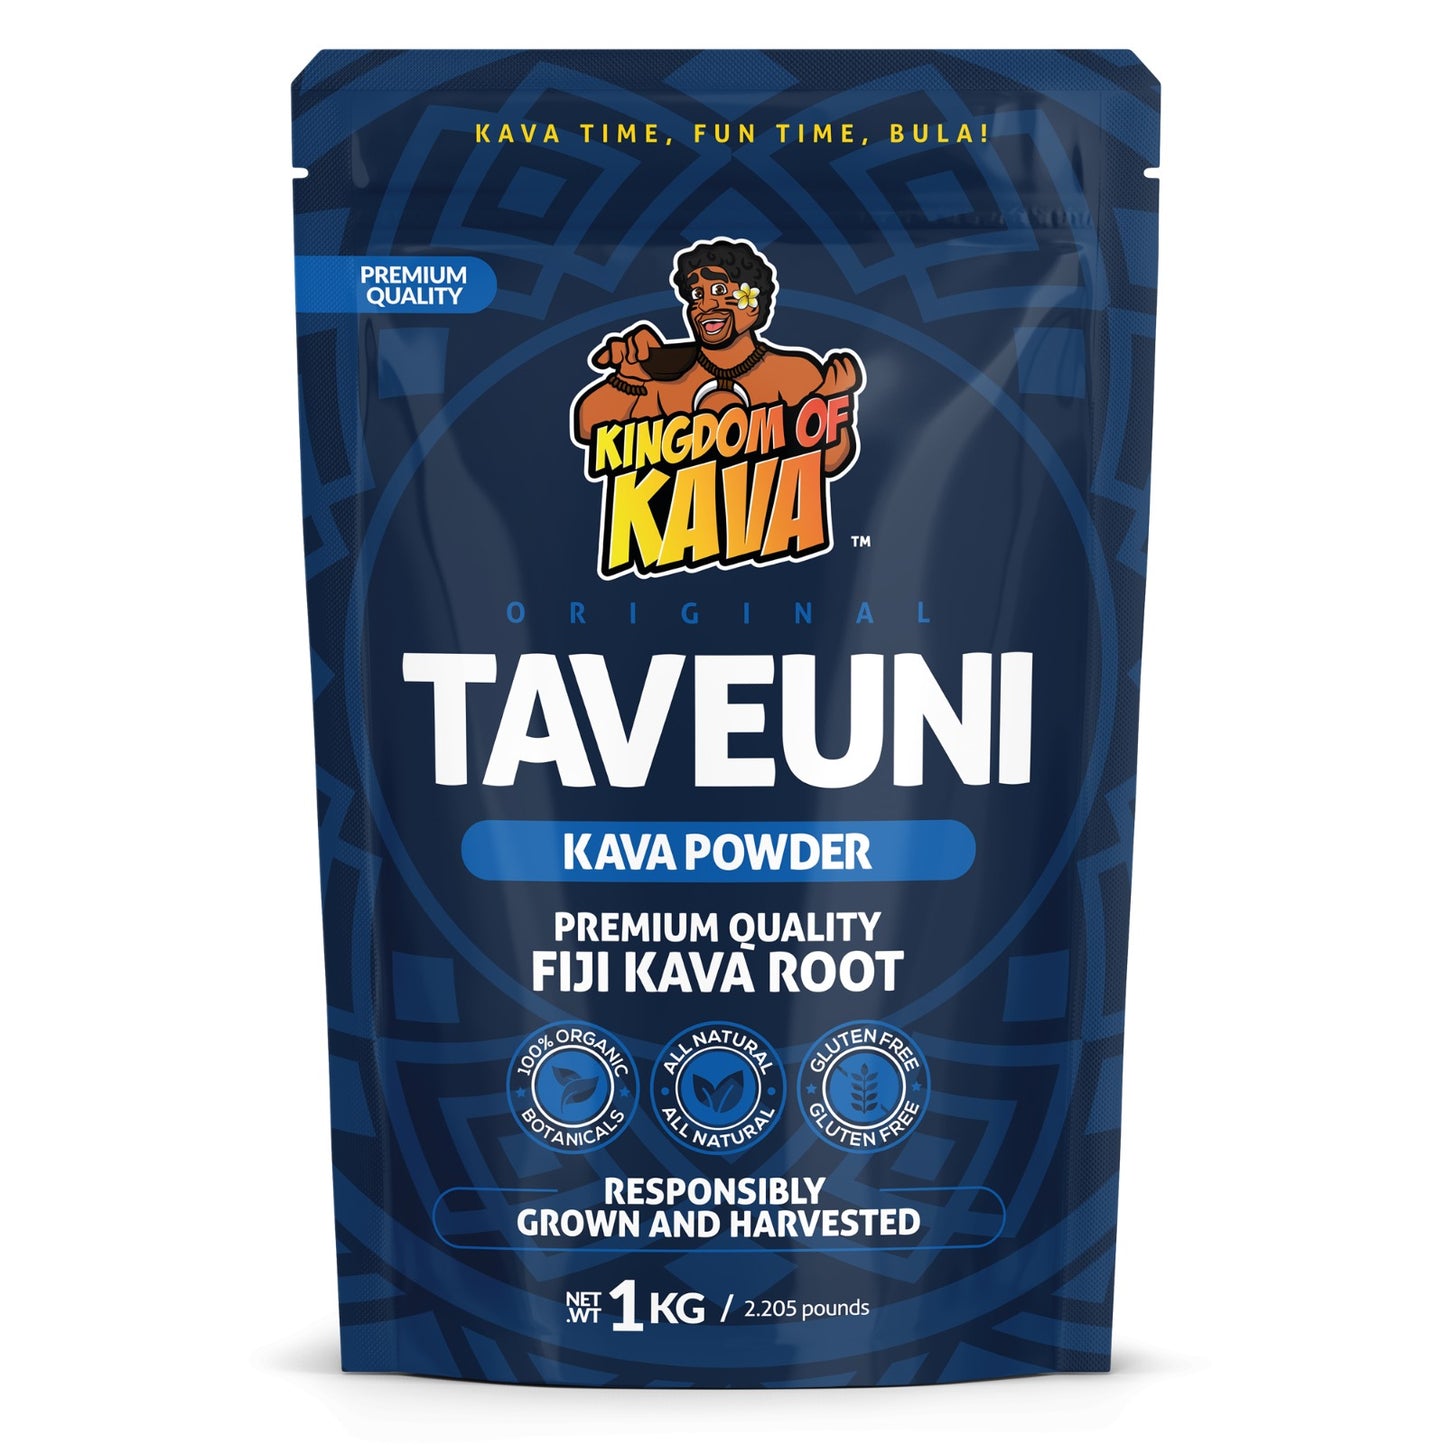 Buy Taveuni Kadavu Kava